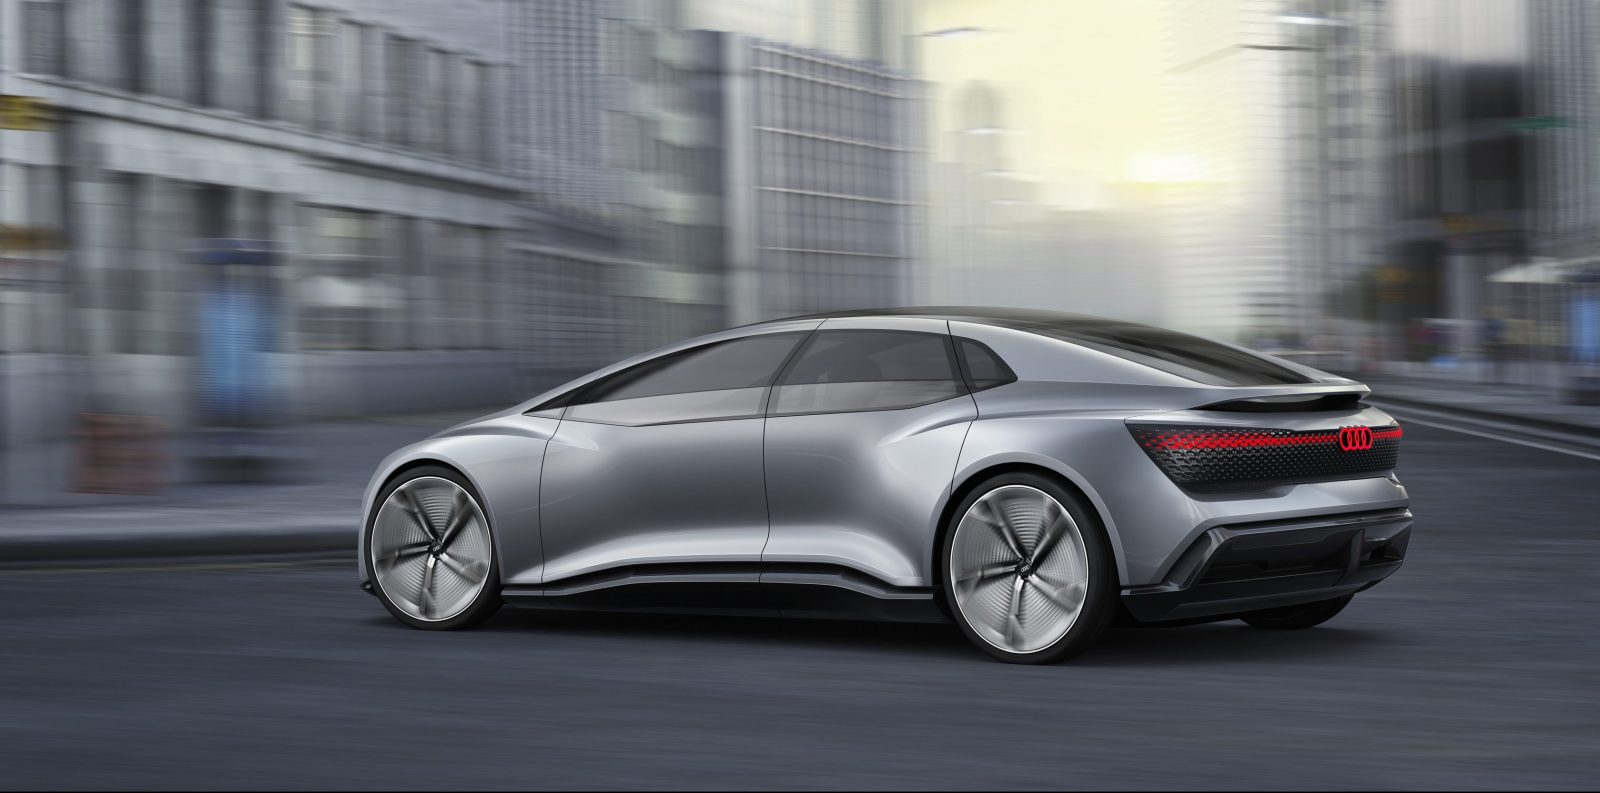 Audi unveils new allelectric autonomous car concept with 'up to 500